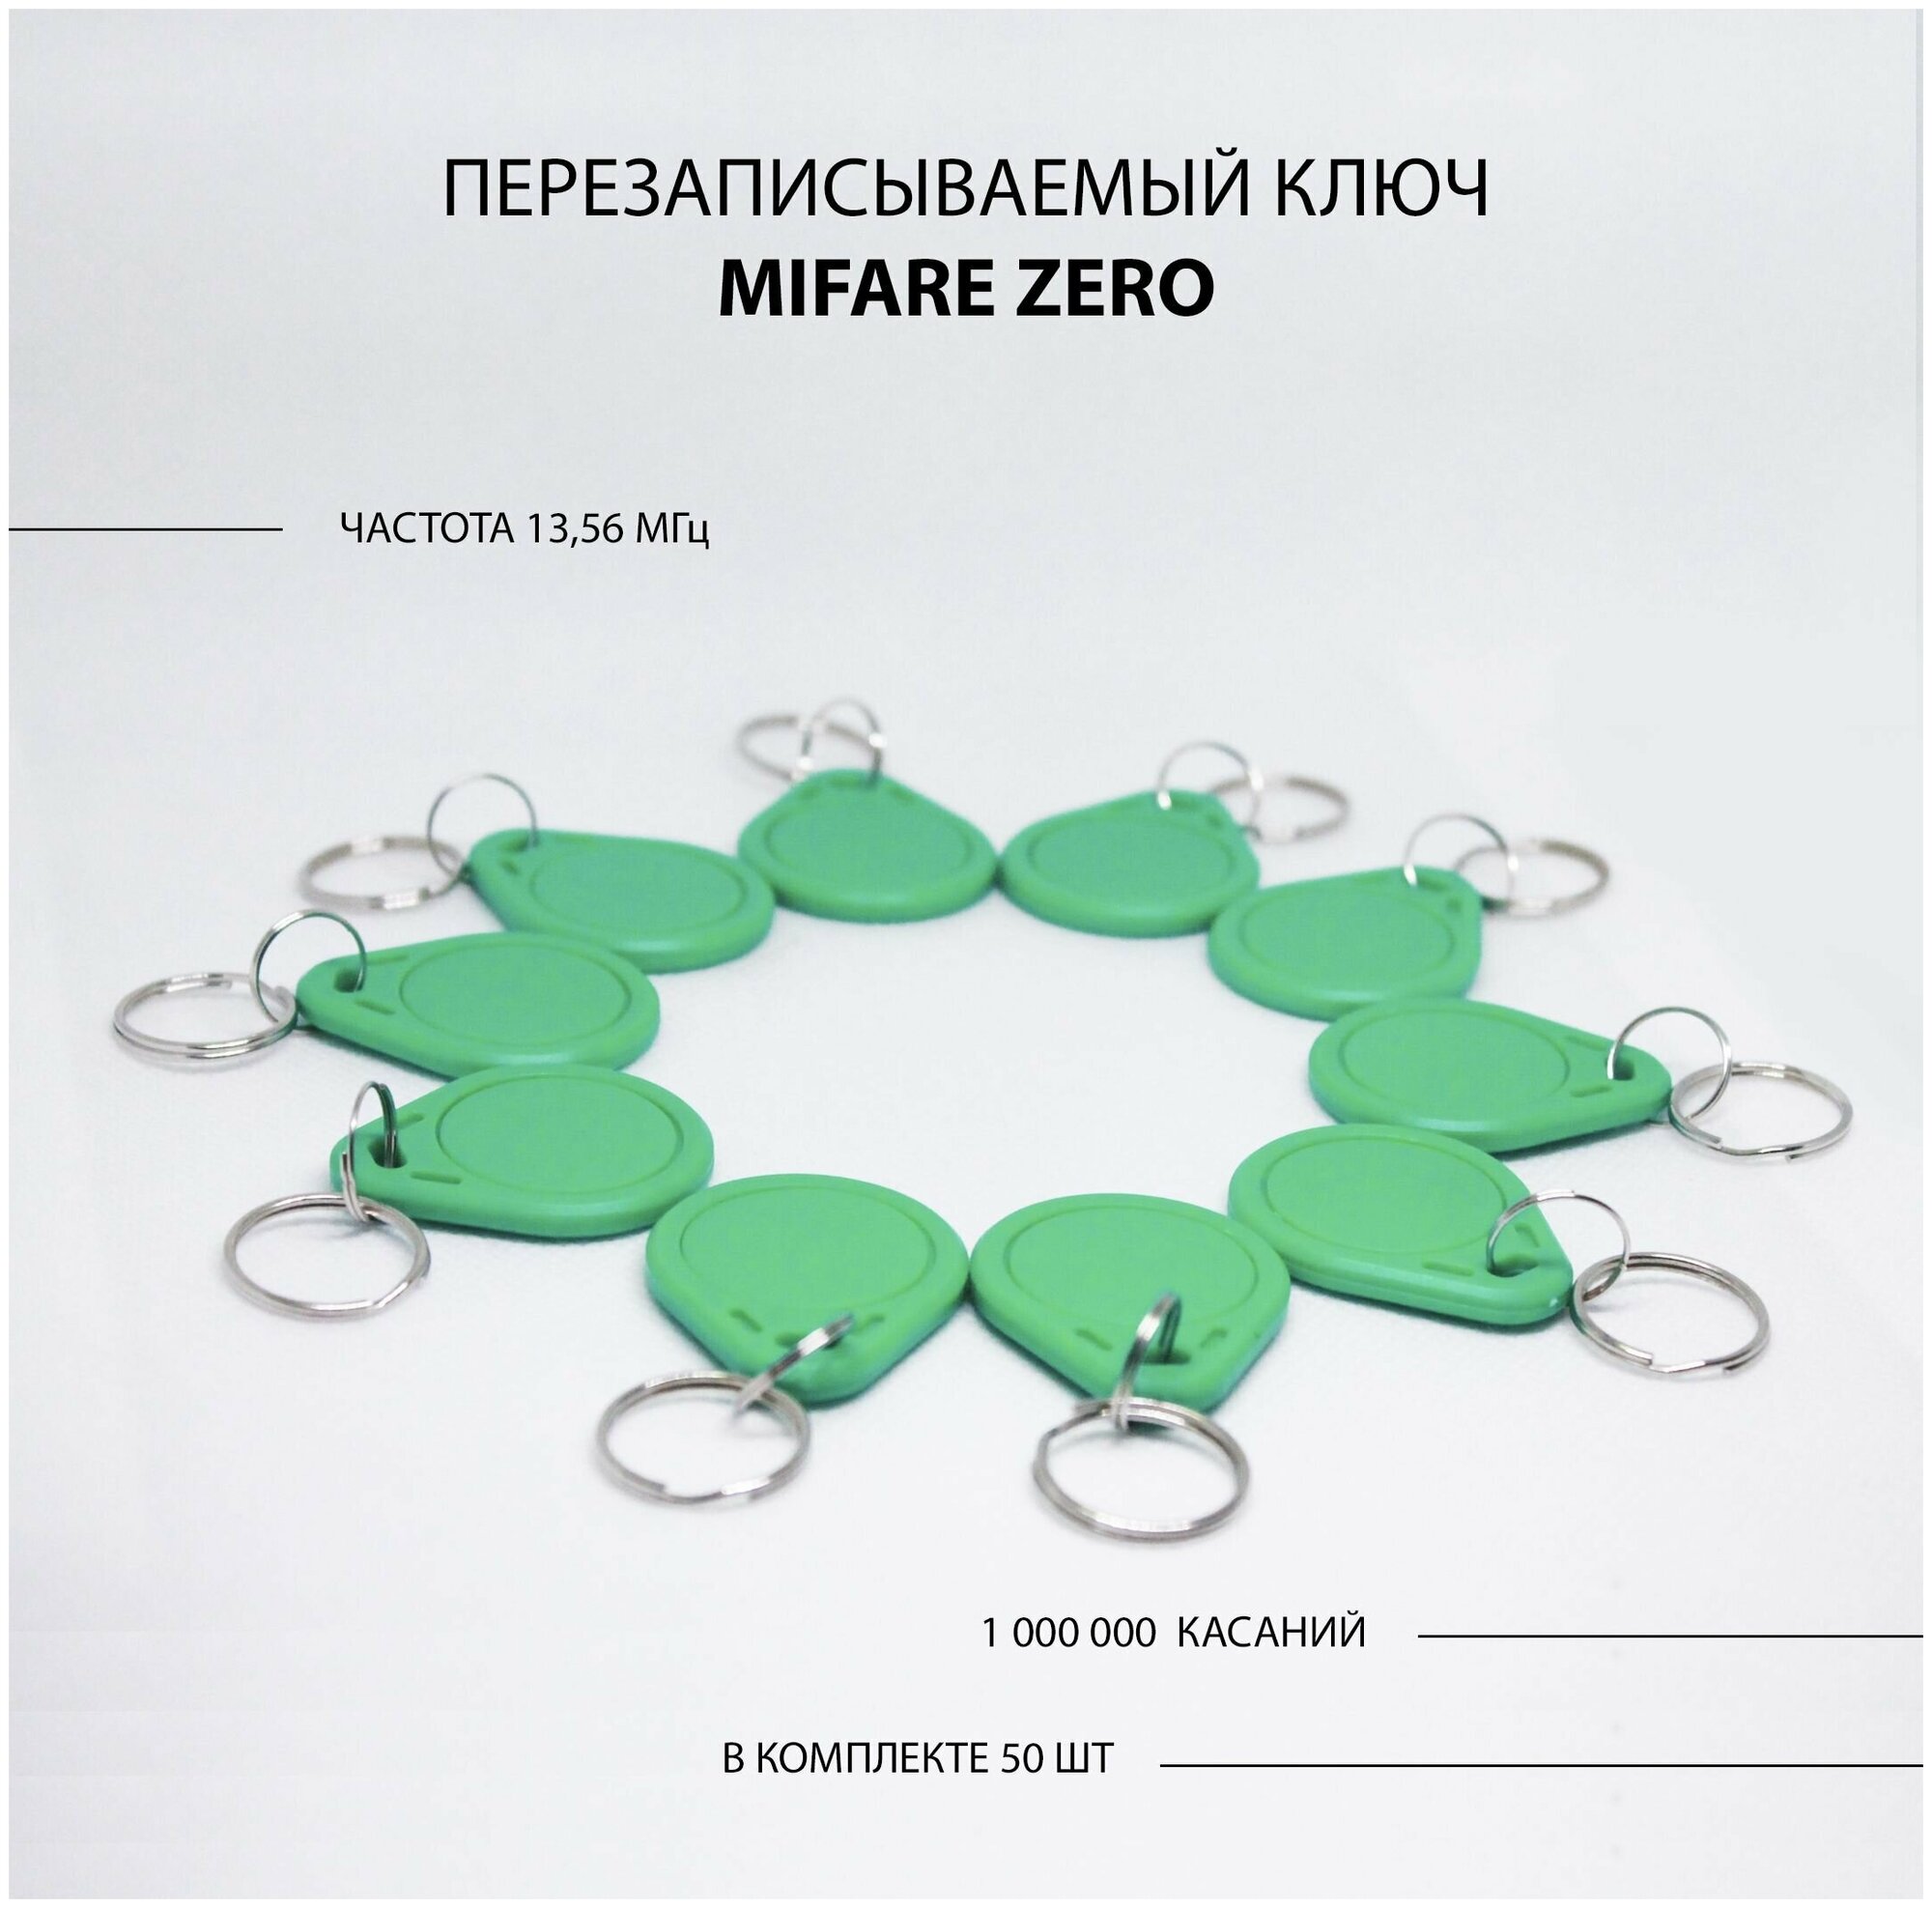 Ключ для домофона Mifare Zero 50шт перезаписываемый . Частота 13,56 МГц Цвет зеленый